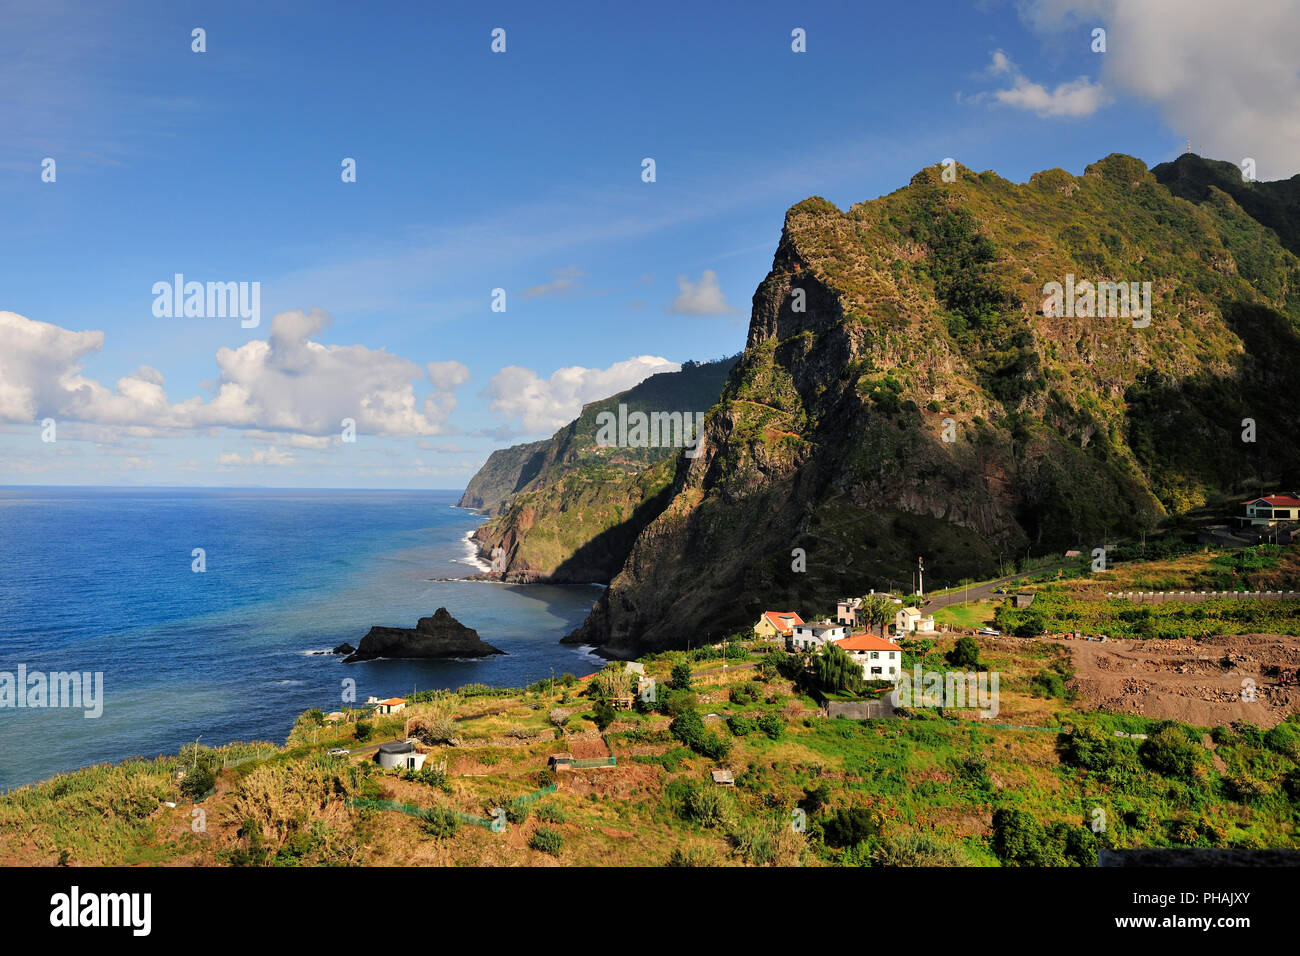 São Jorge region. North coast of Madeira. Portugal Stock Photo